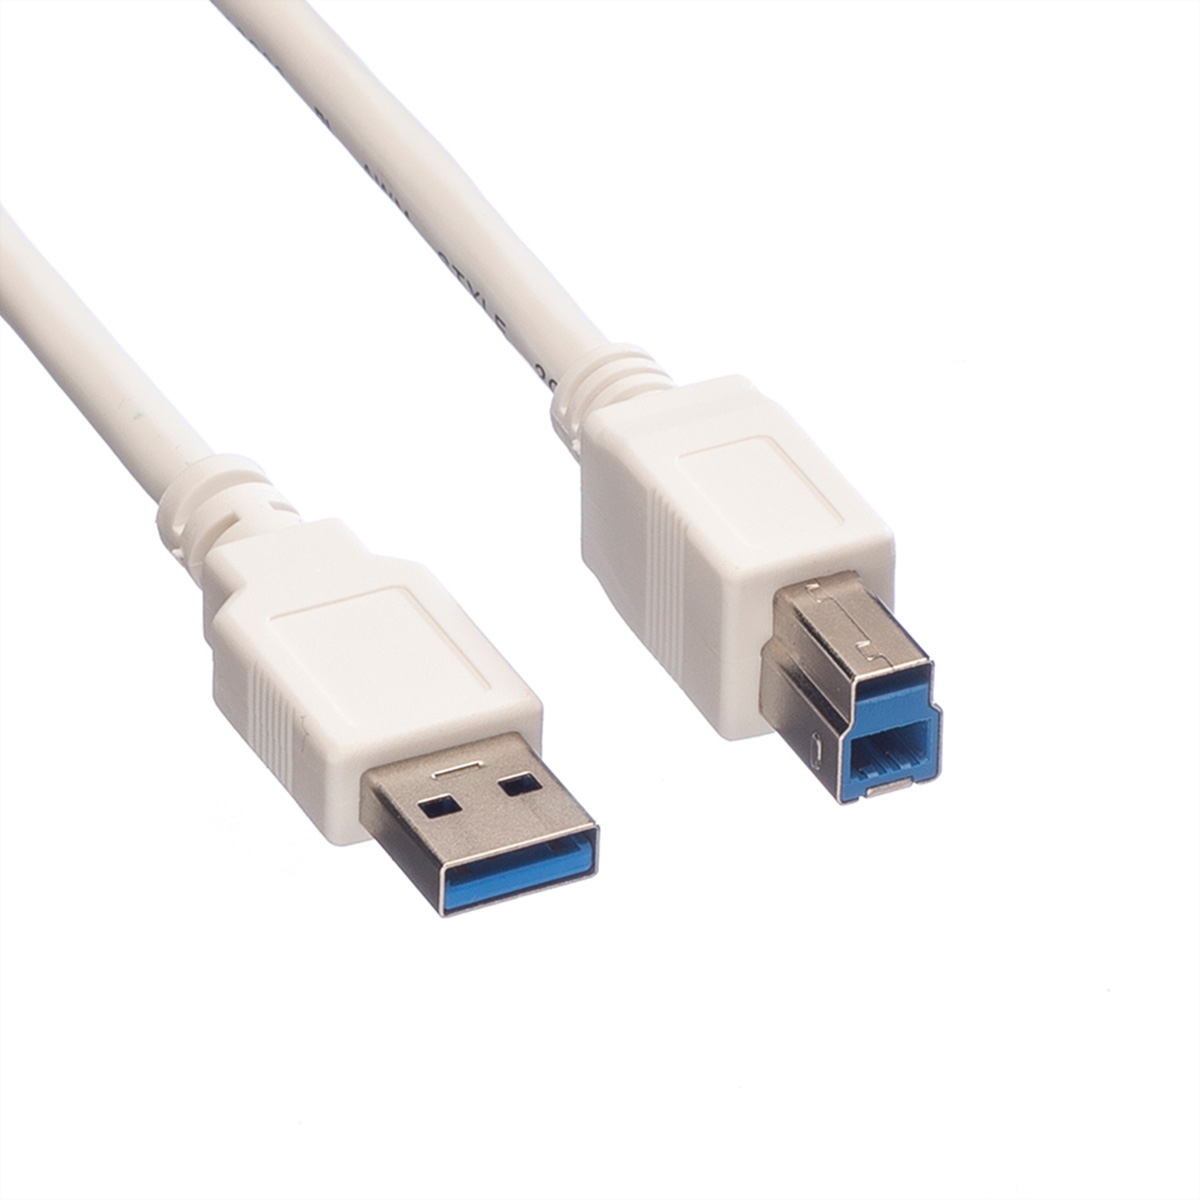 3.2 Typ Kabel USB VALUE Kabel, Gen 1 USB 3.2 A-B